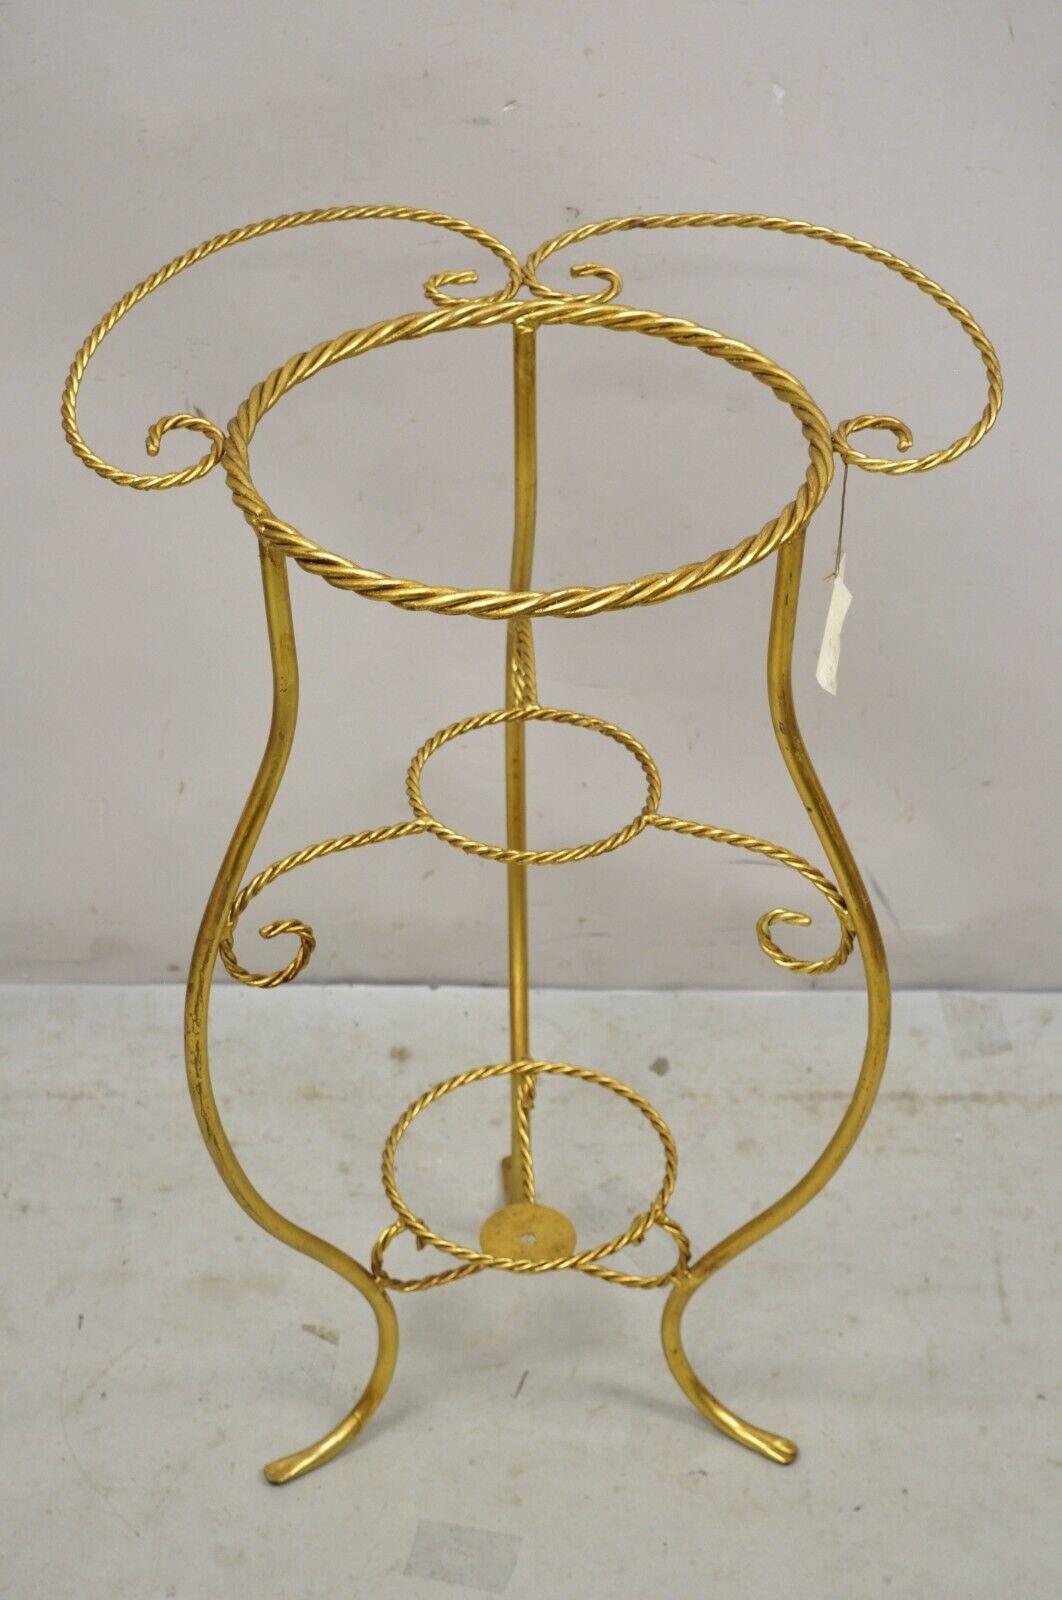 Vintage Italian Hollywood Regency Gold Iron Rope Form 2 Tier Bath Washstand Plant Stand. Artikel vorgestellt hat eine (2) Tier Eisen Seil Rahmen, Waschtisch Rahmen (Beispiel abgebildet), kann auch als 2-Tier-Pflanzenständer, Gold vergoldet,